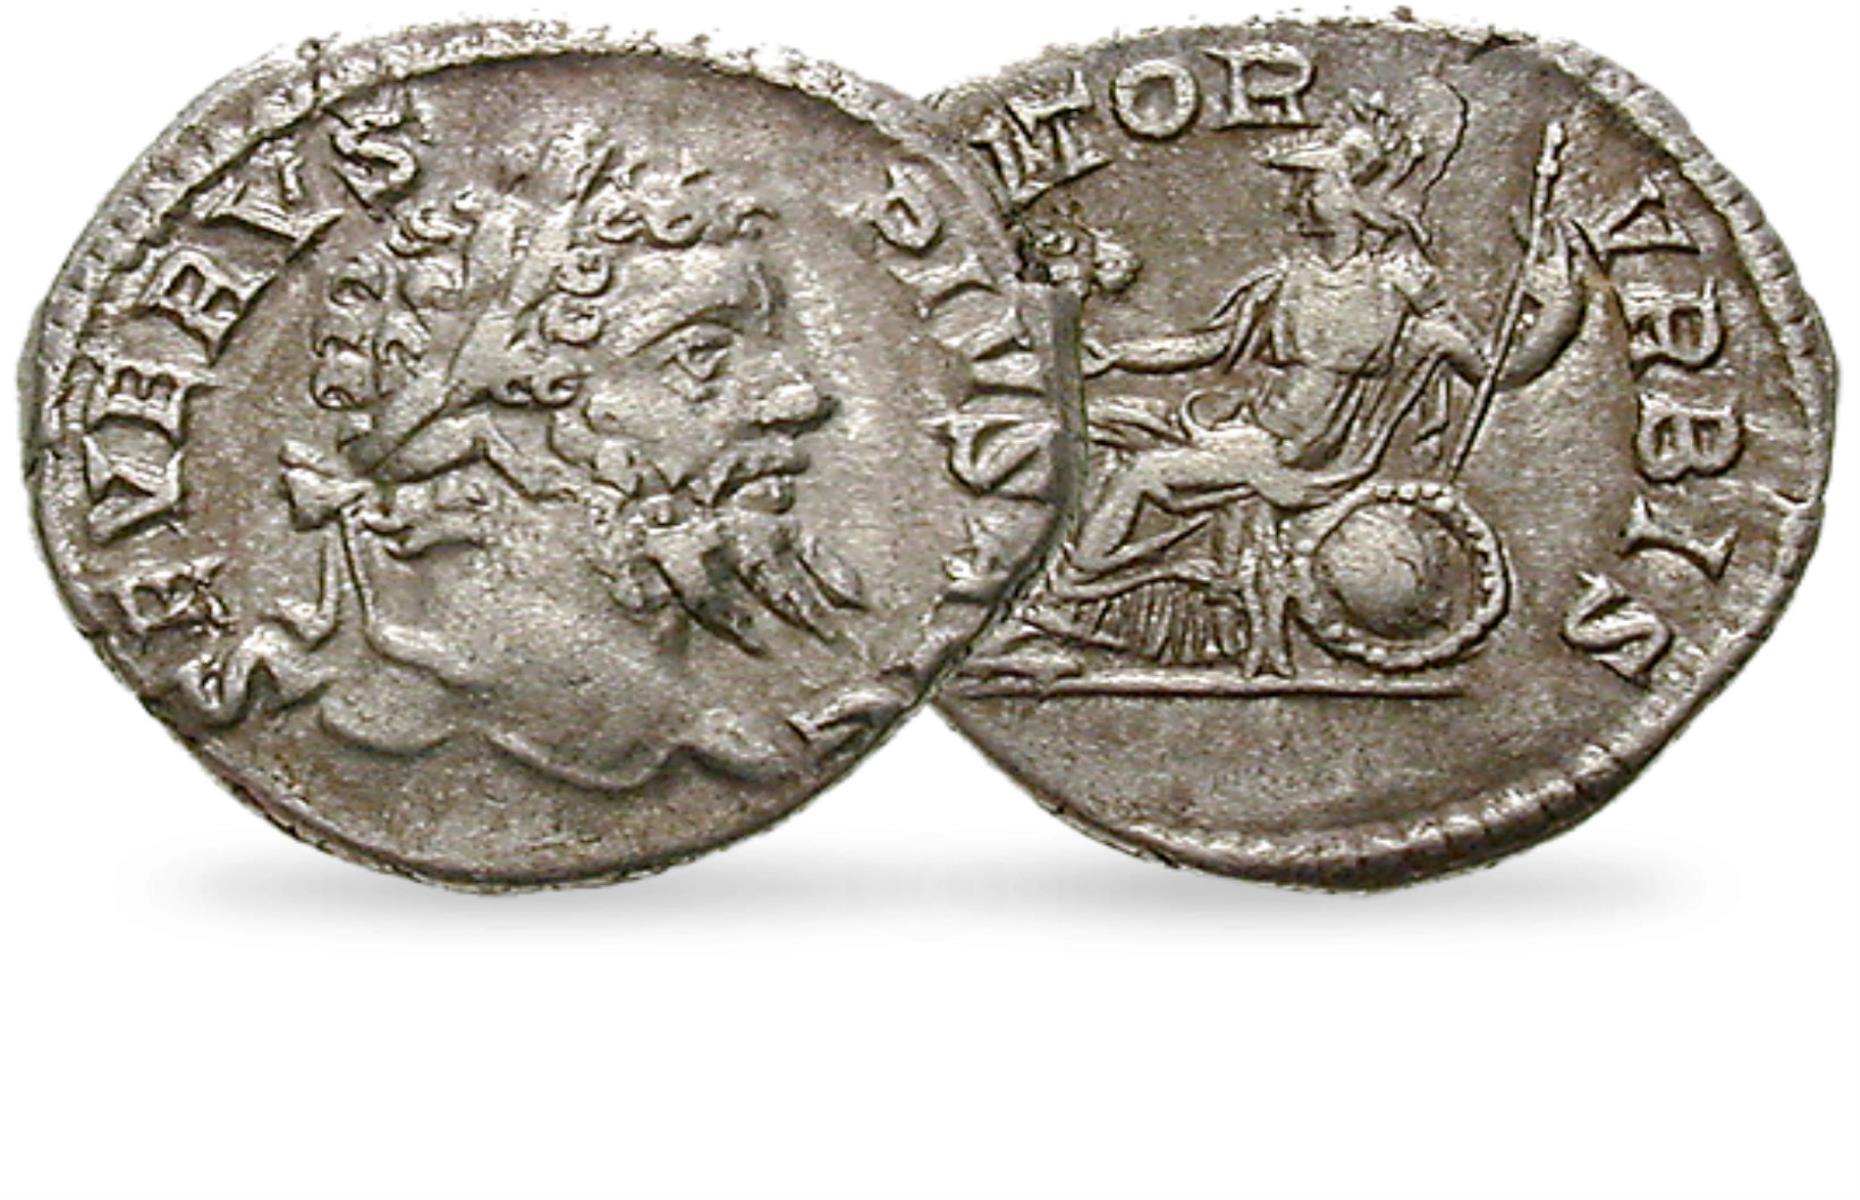 Septimius Severus Roman Coin - worth £279.90